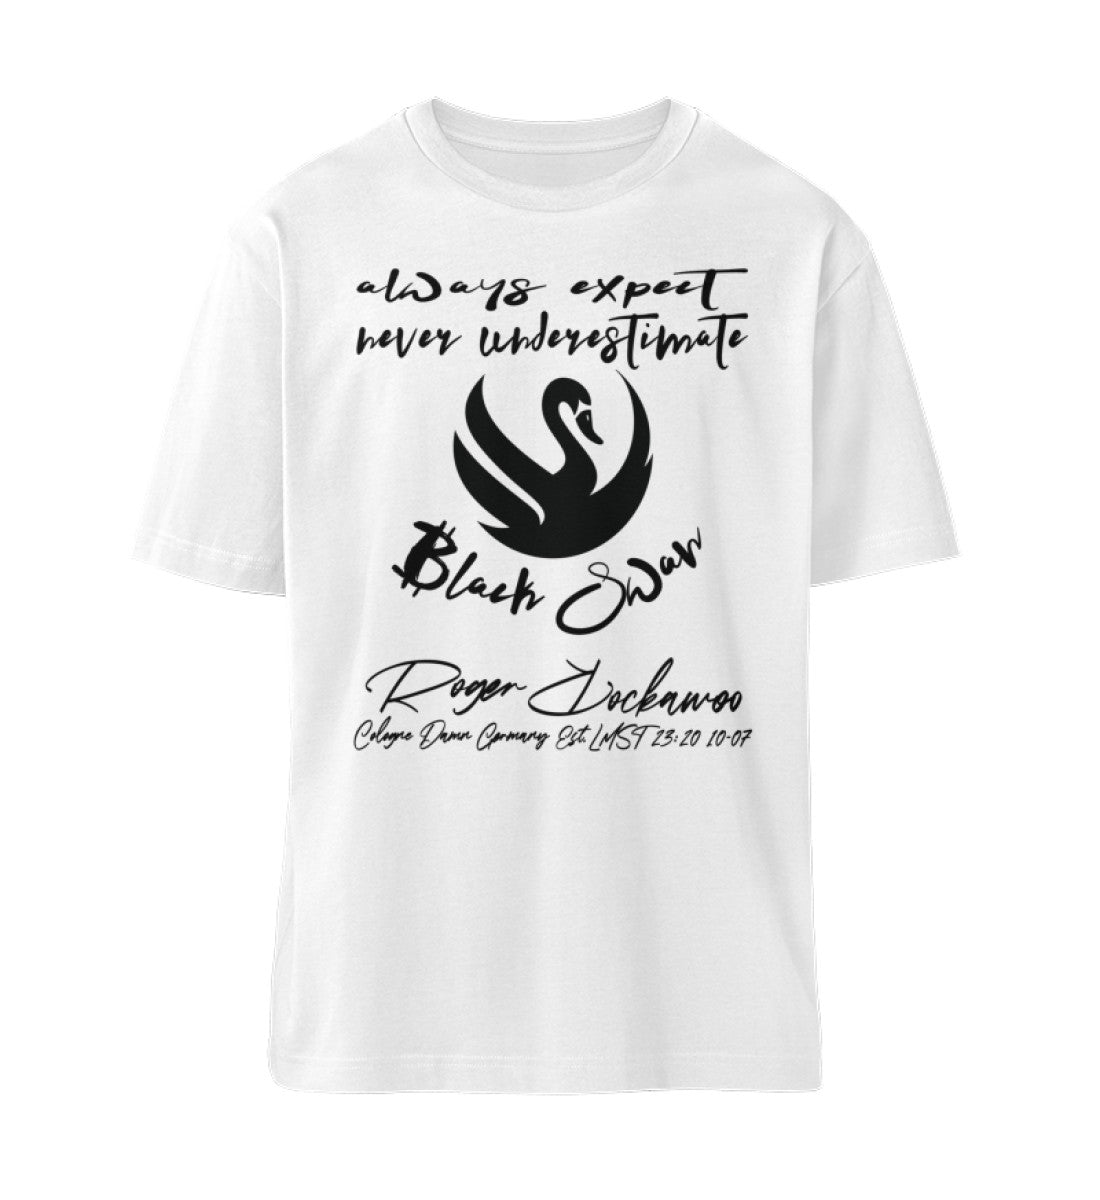 Weißes T-Shirt Unisex Relaxed Fit für Damen und Herren bedruckt mit dem Design der Roger Rockawoo Kollektion Bitcoin Finanz Schwarzer Schwan